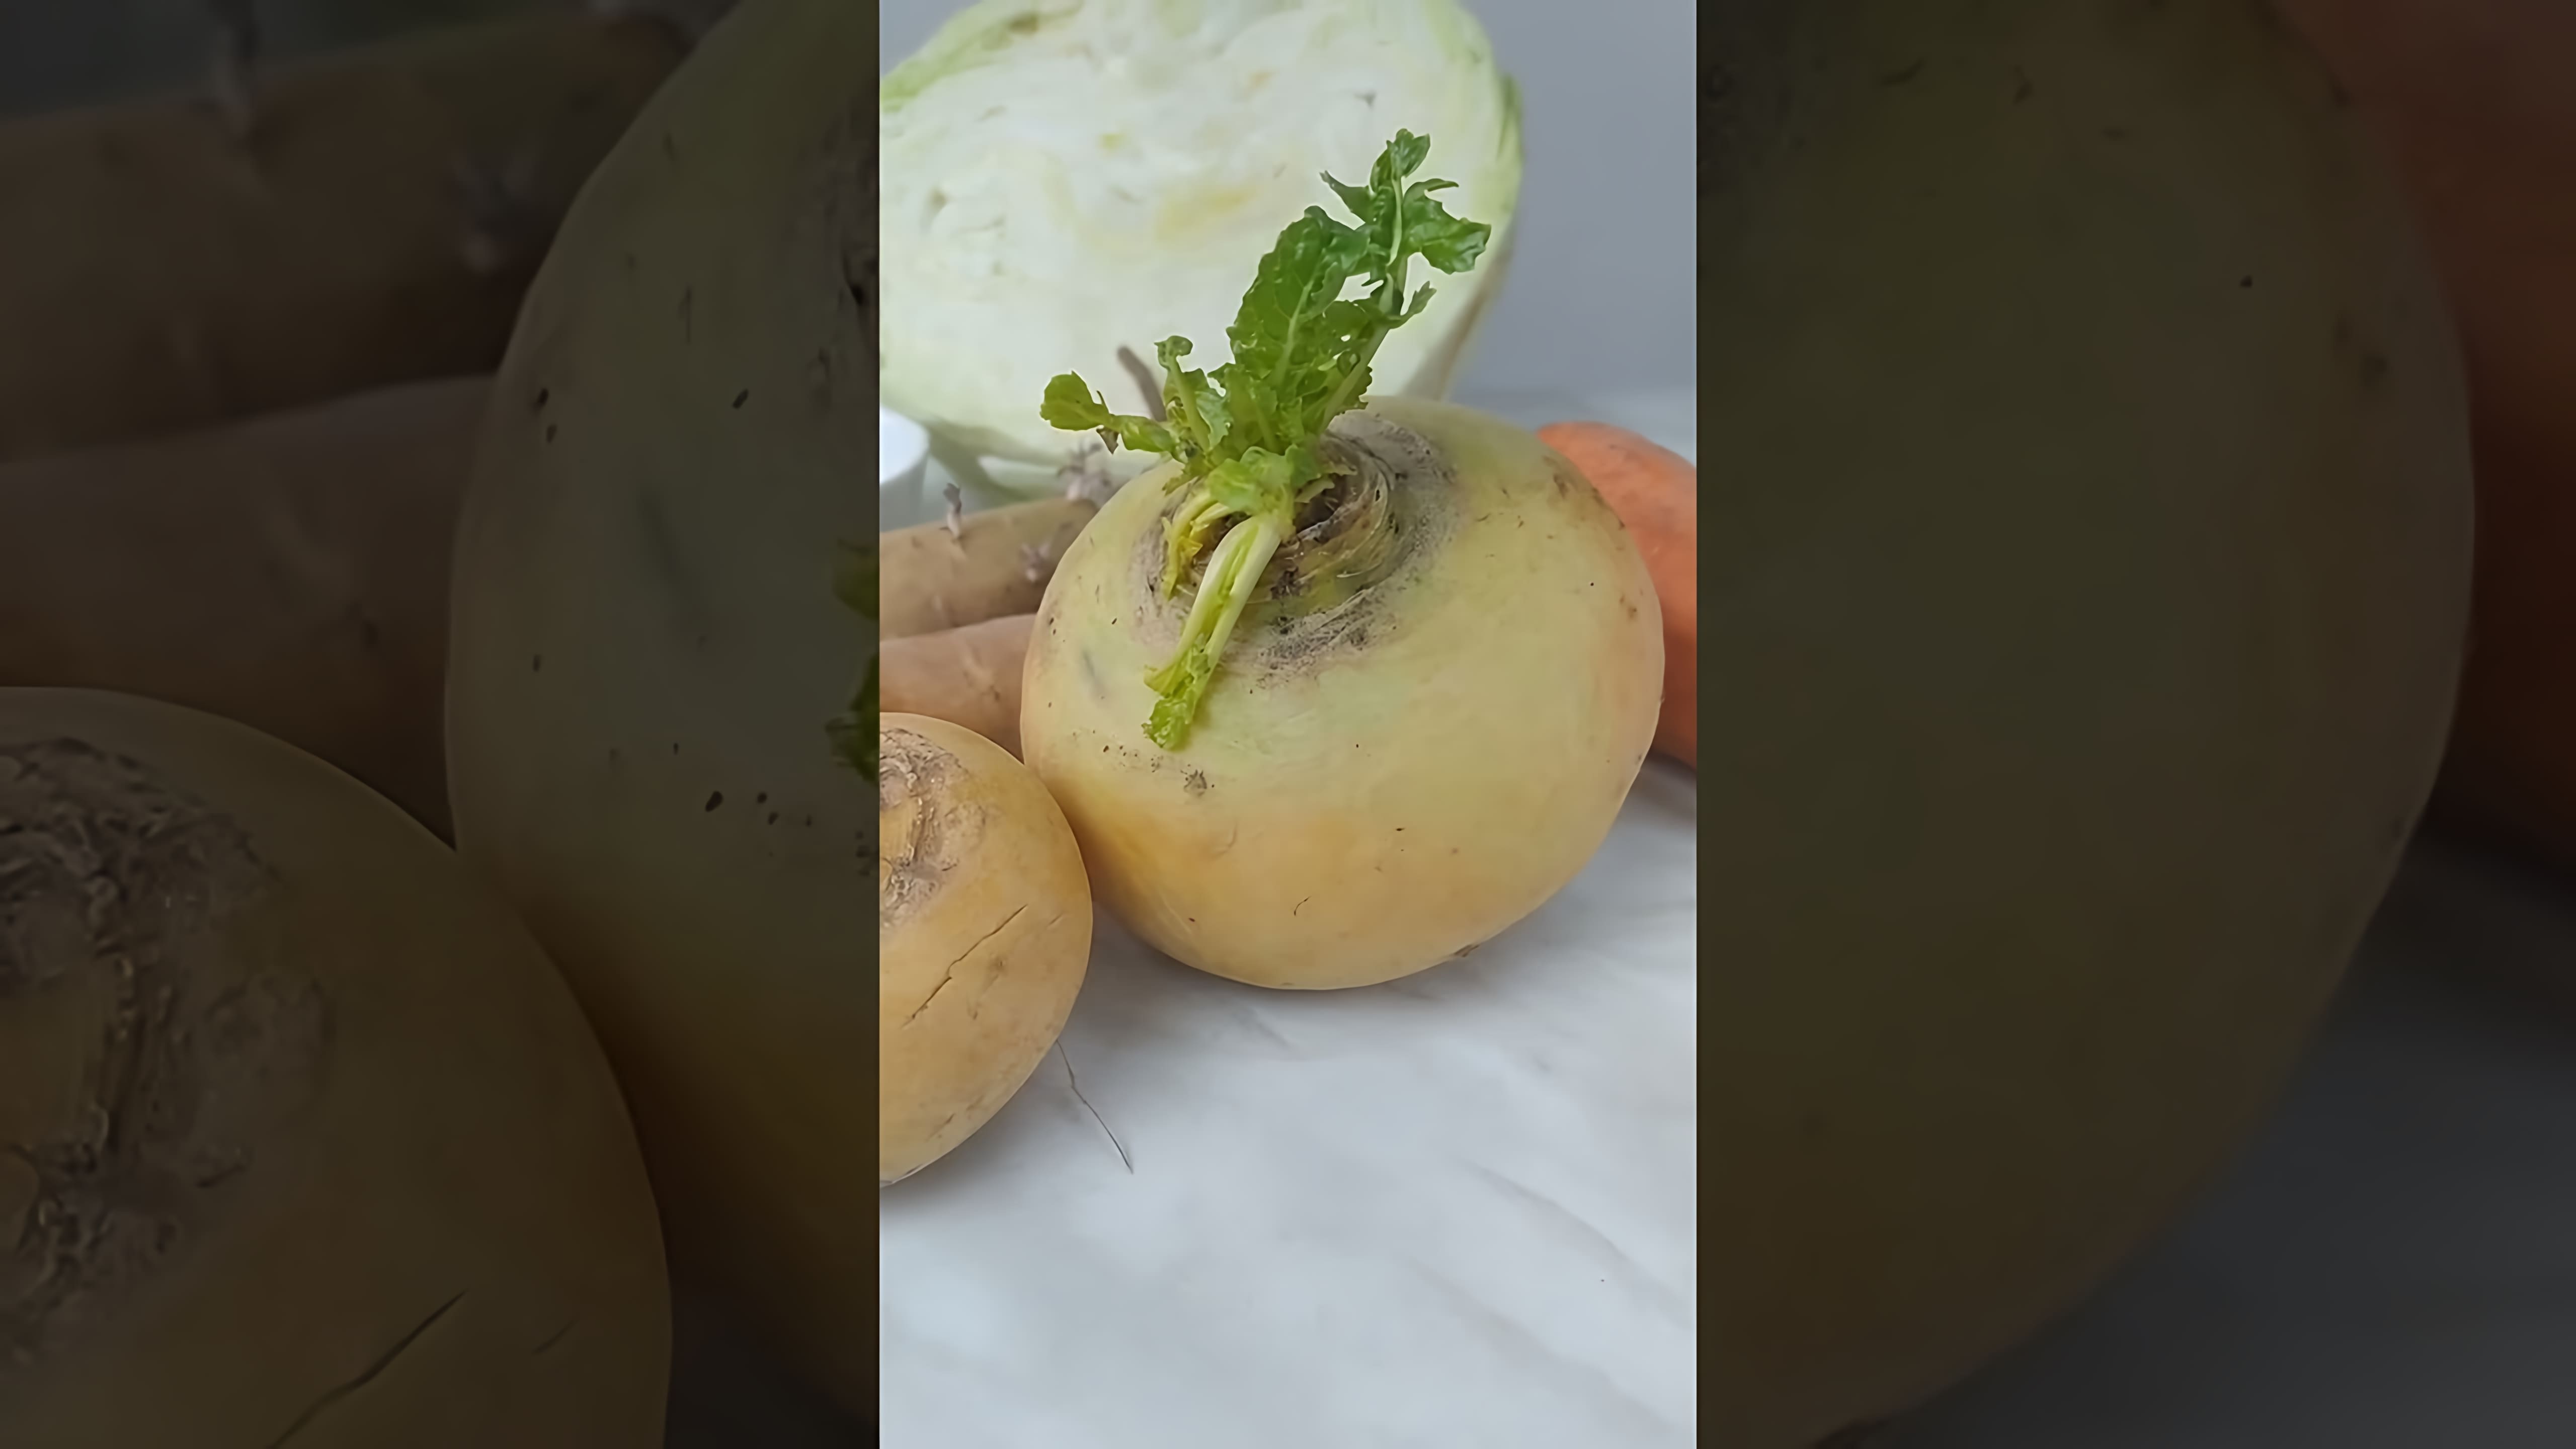 В этом видео демонстрируется процесс приготовления ферментированной репы и репы квашенной с капустой и морковью